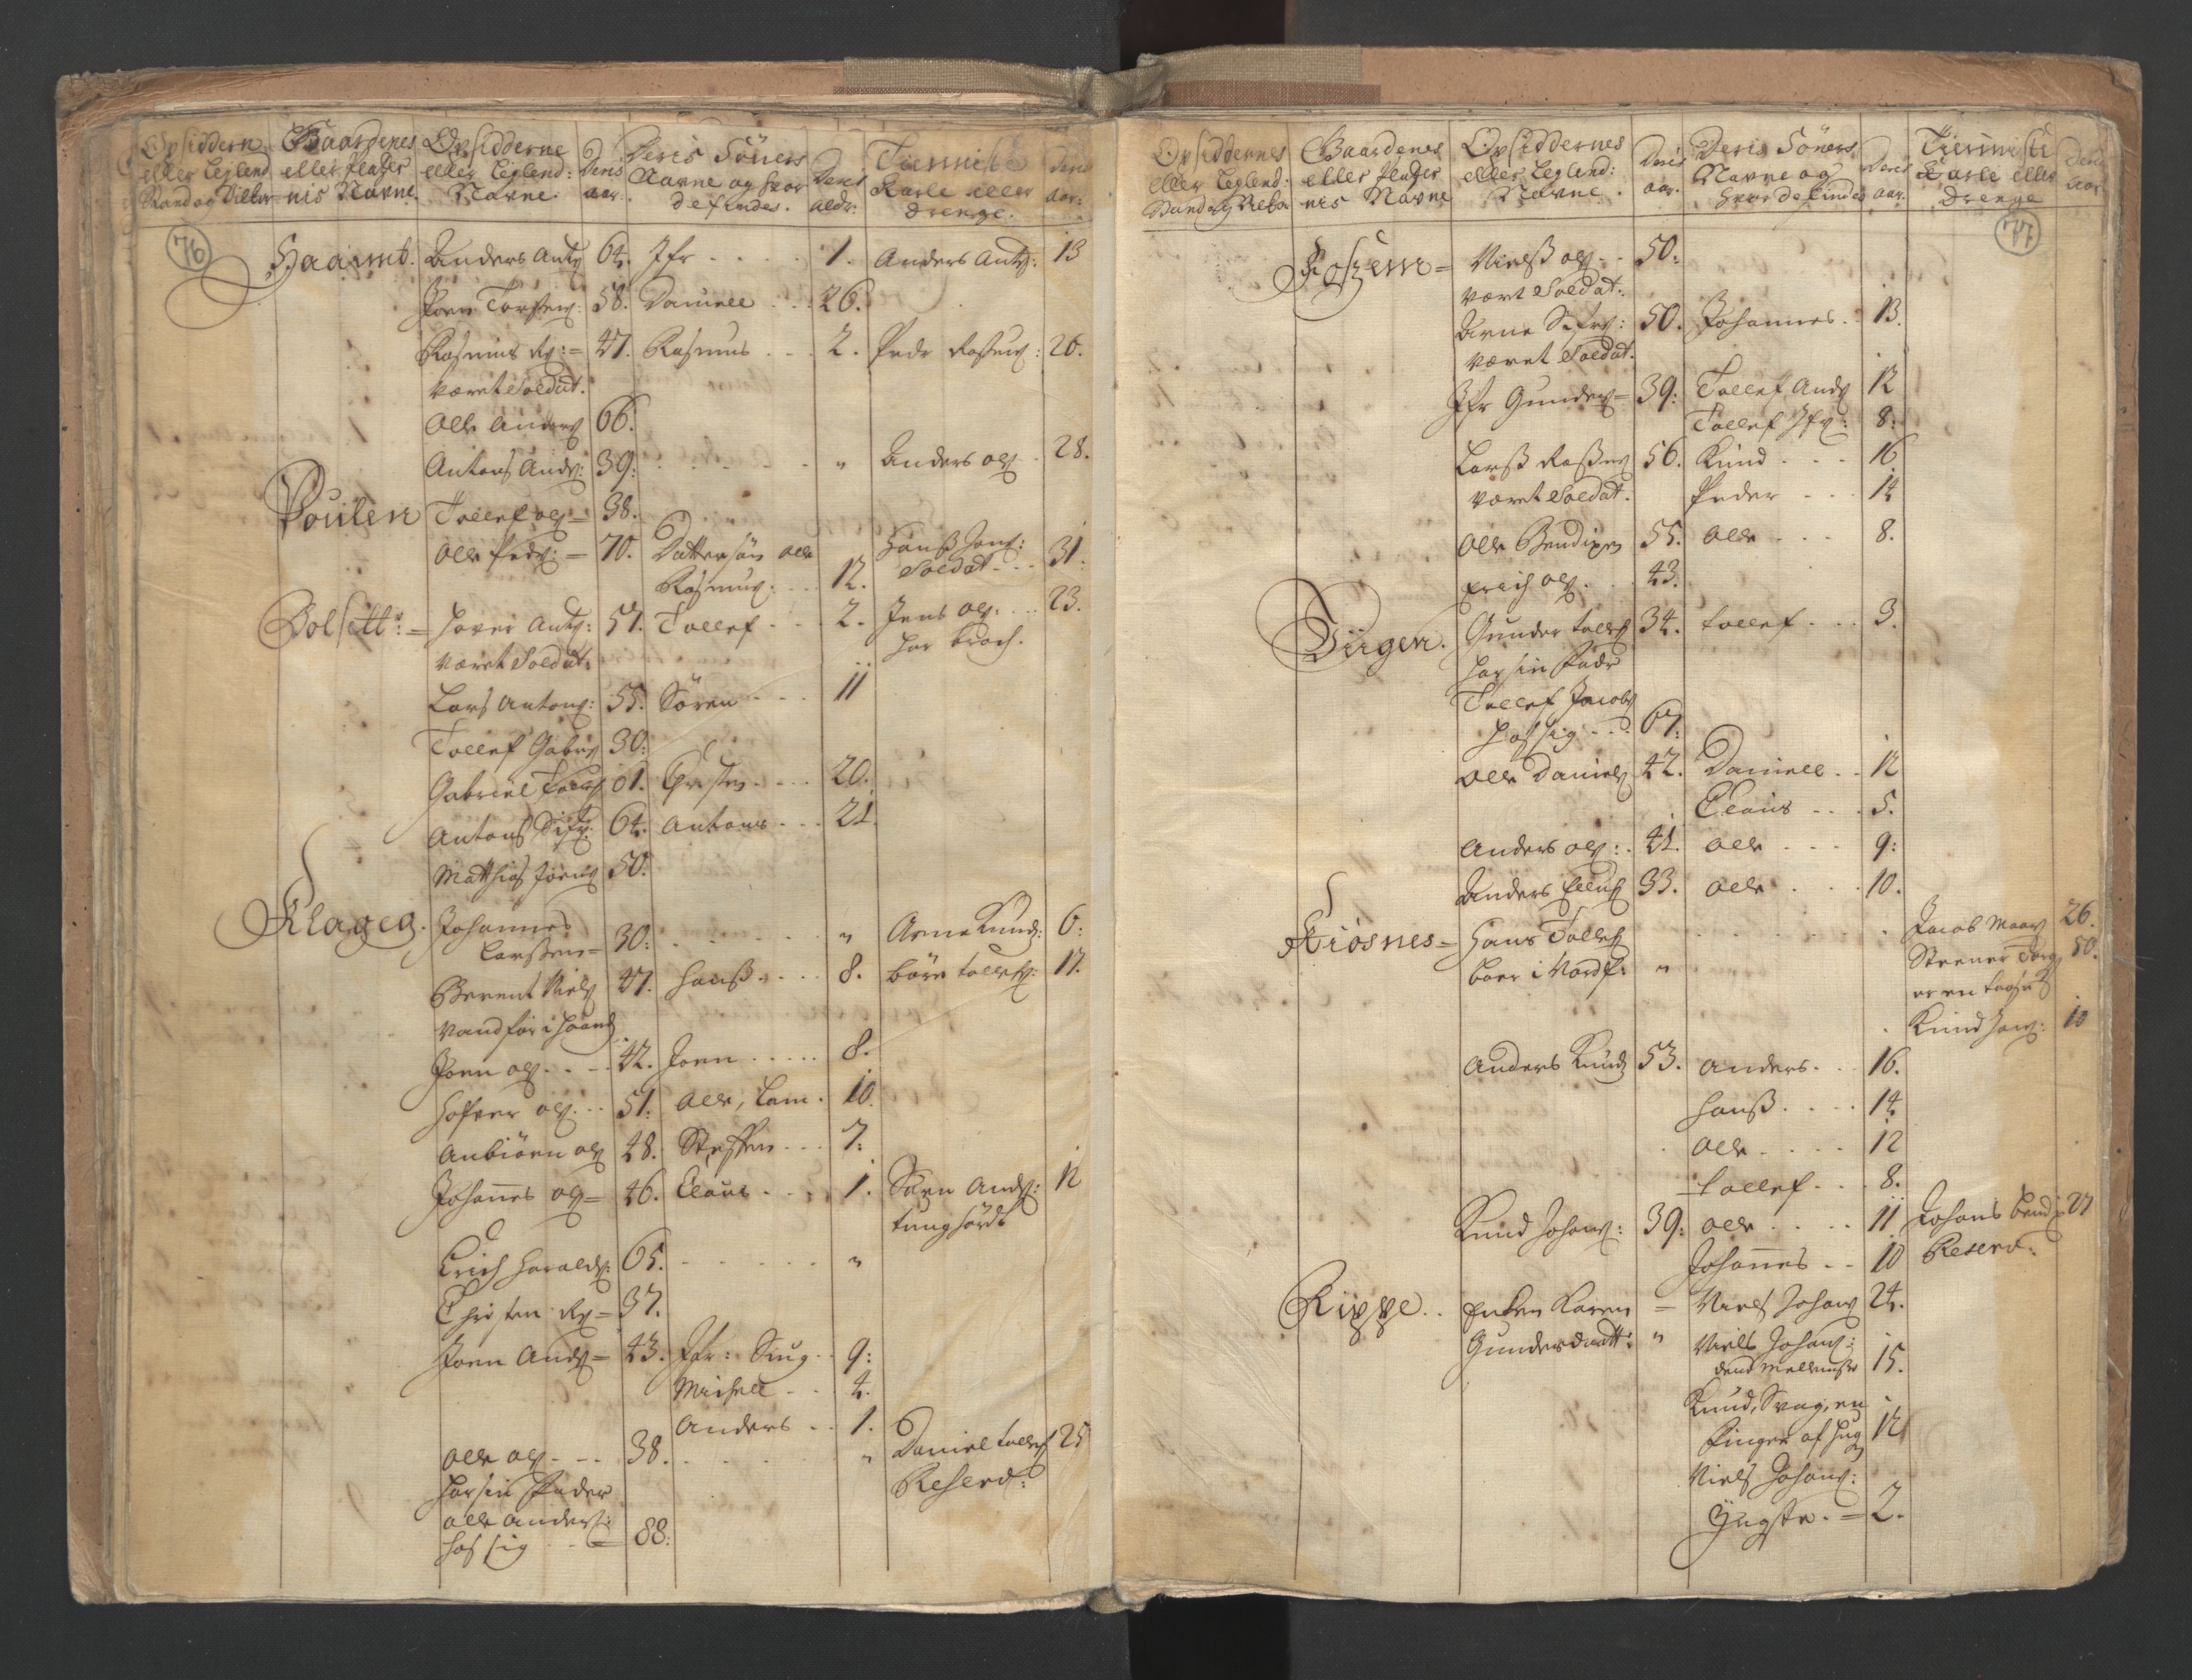 RA, Manntallet 1701, nr. 9: Sunnfjord fogderi, Nordfjord fogderi og Svanø birk, 1701, s. 76-77